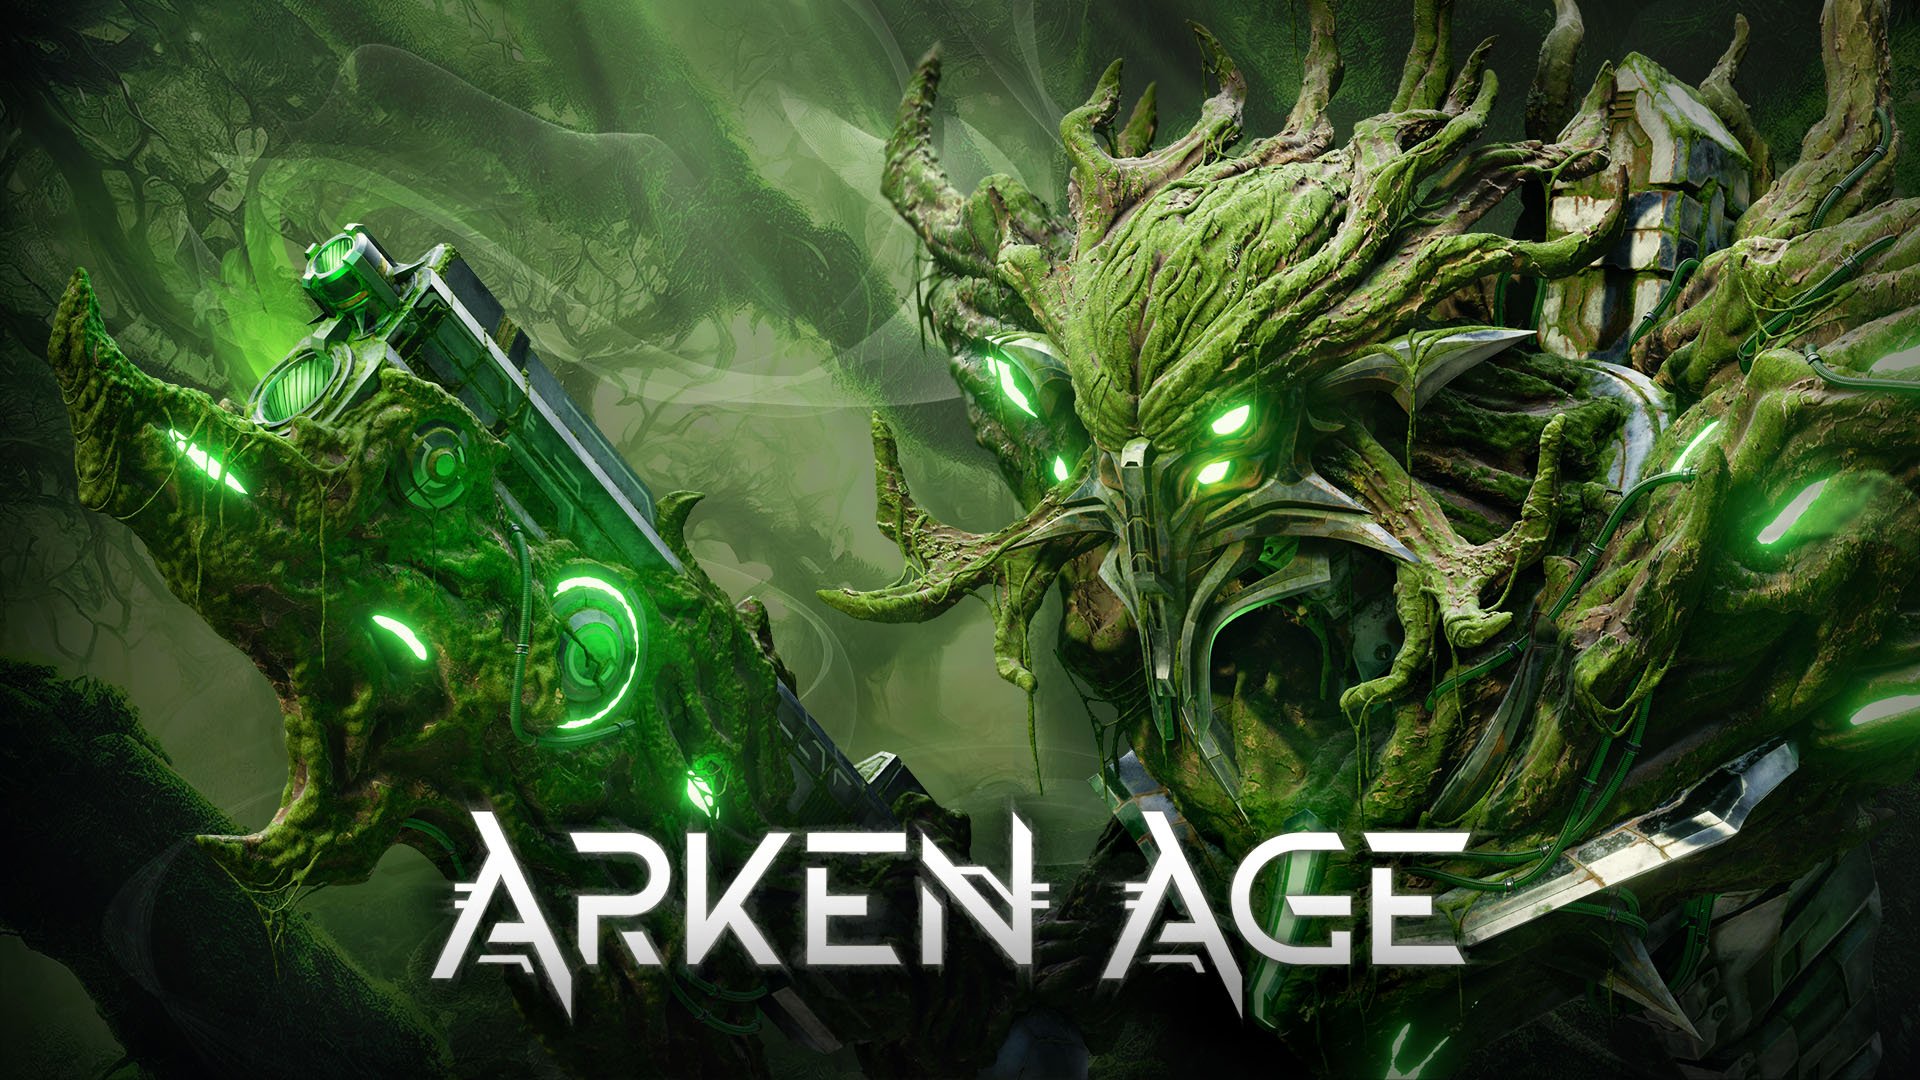 الإعلان عن لعبة مغامرات الواقع الافتراضي Arken Age لأجهزة PS VR2 وSteamVR